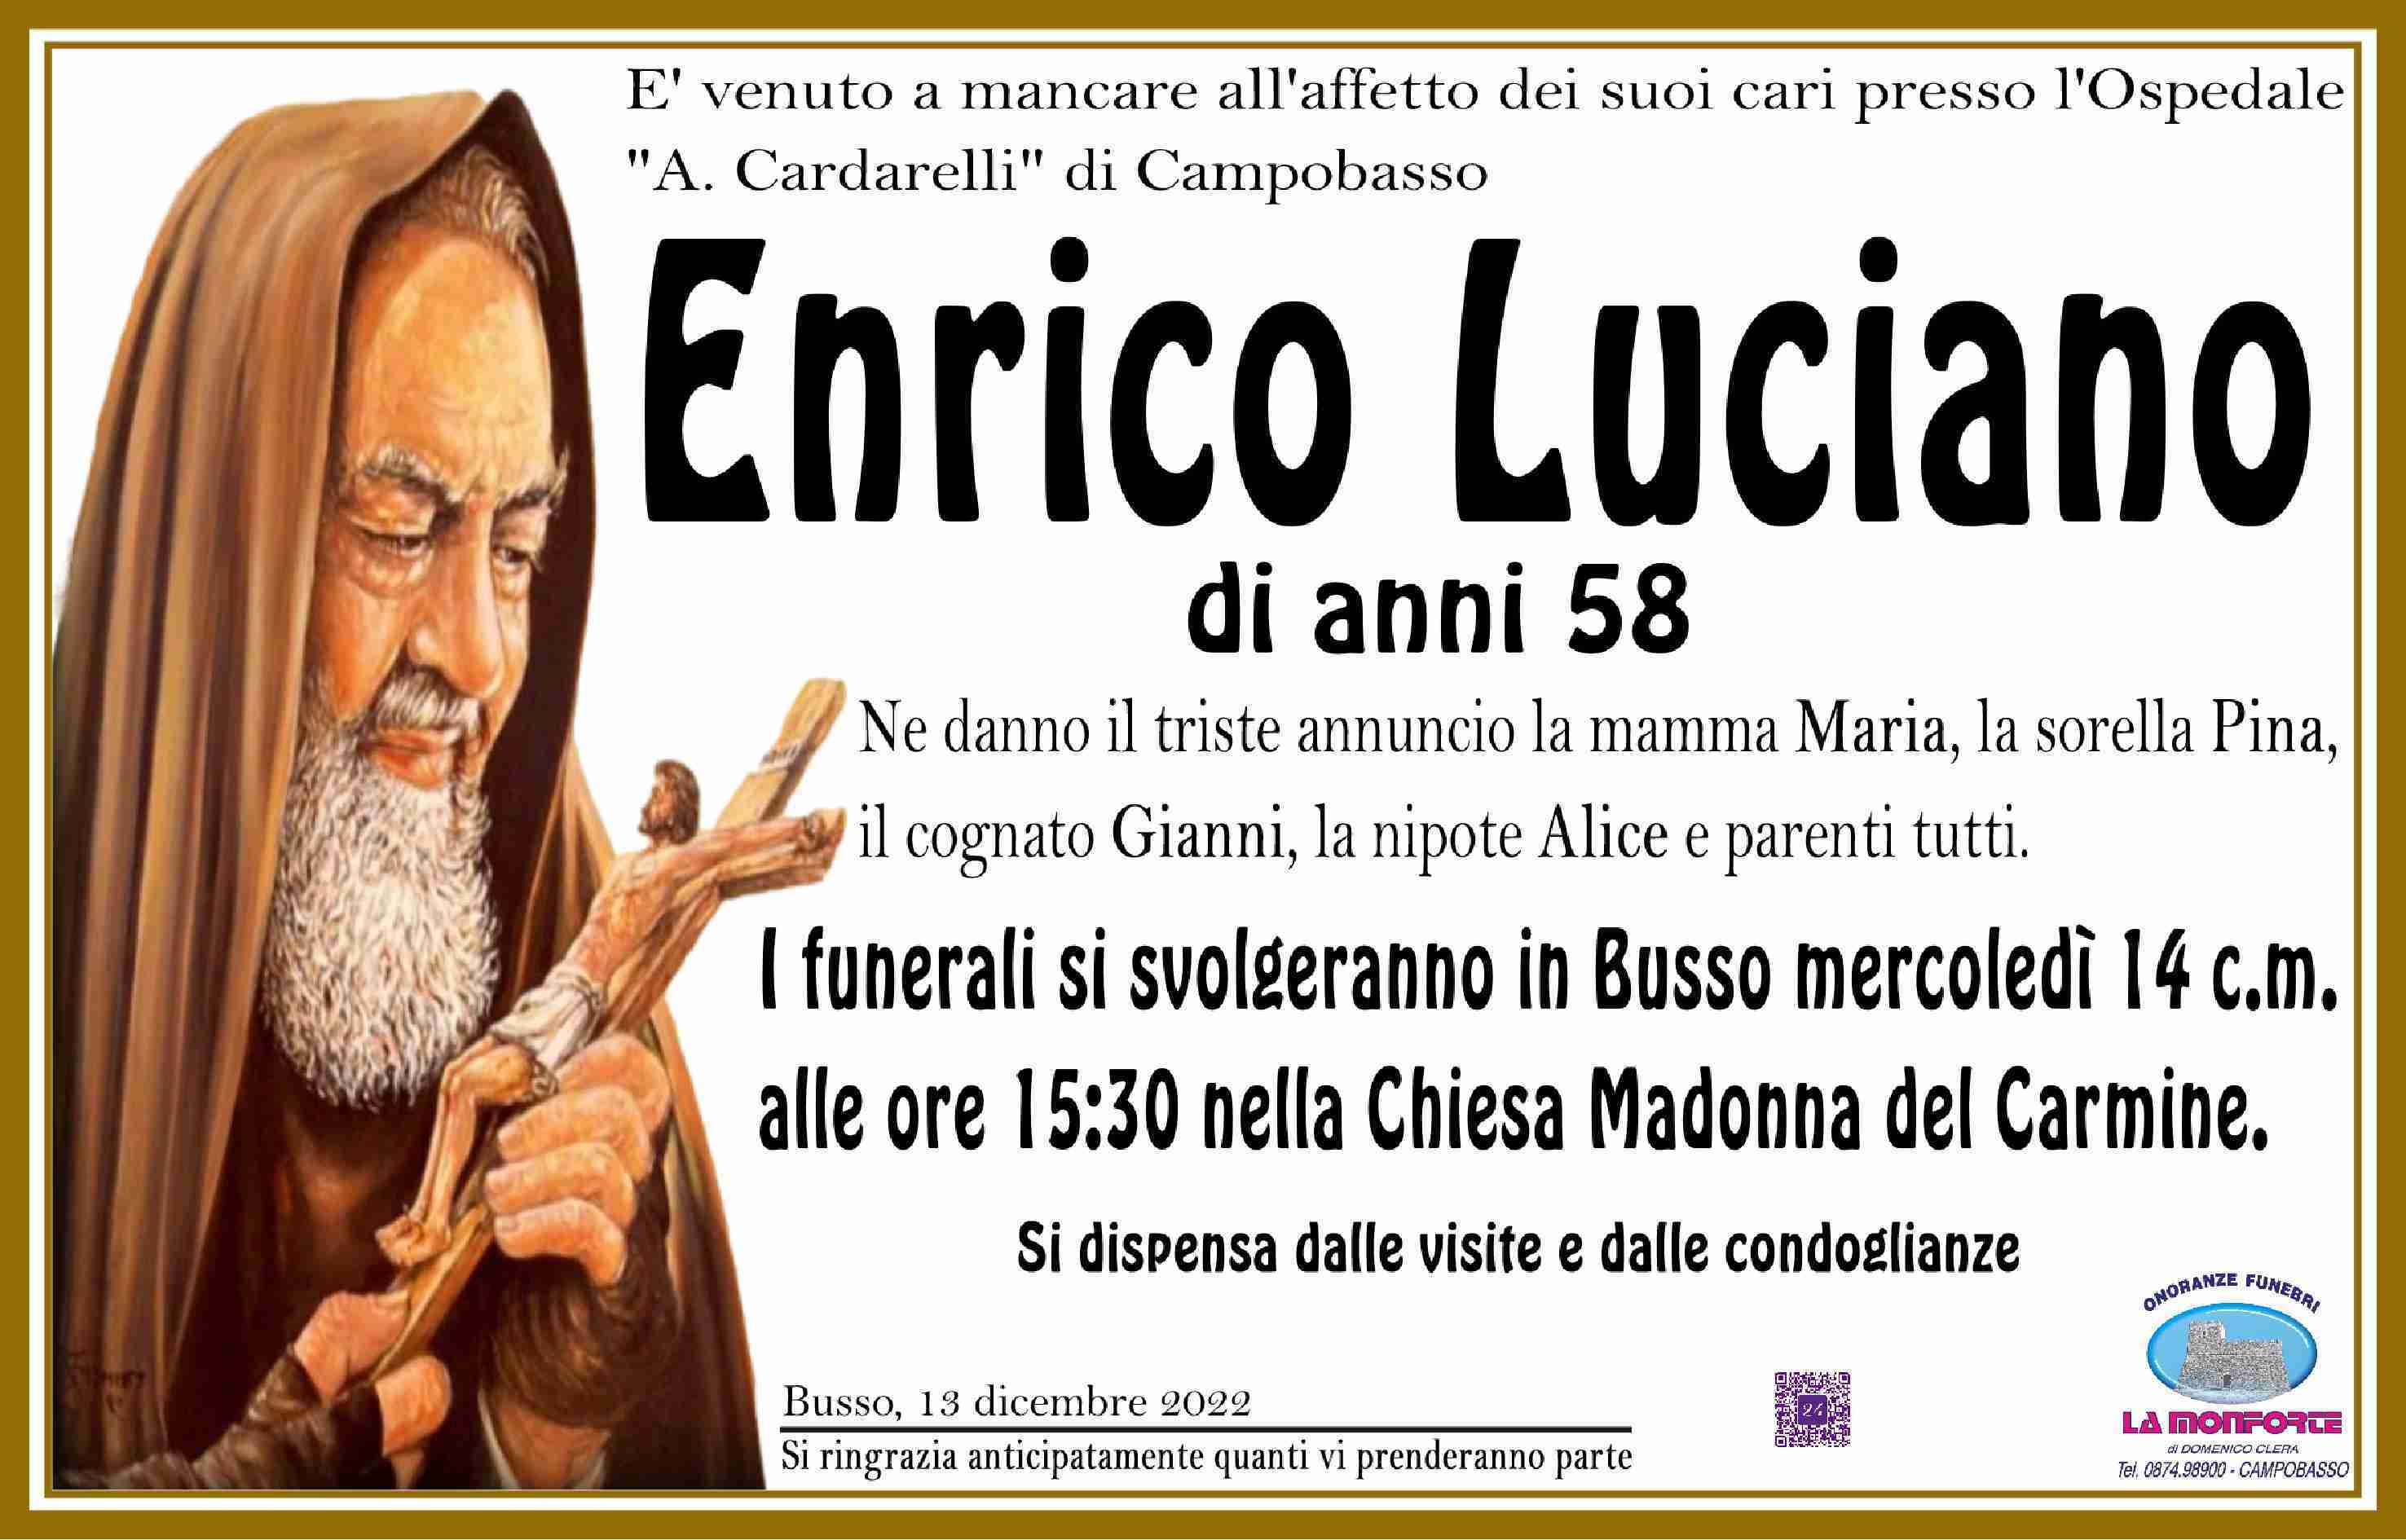 Enrico Luciano